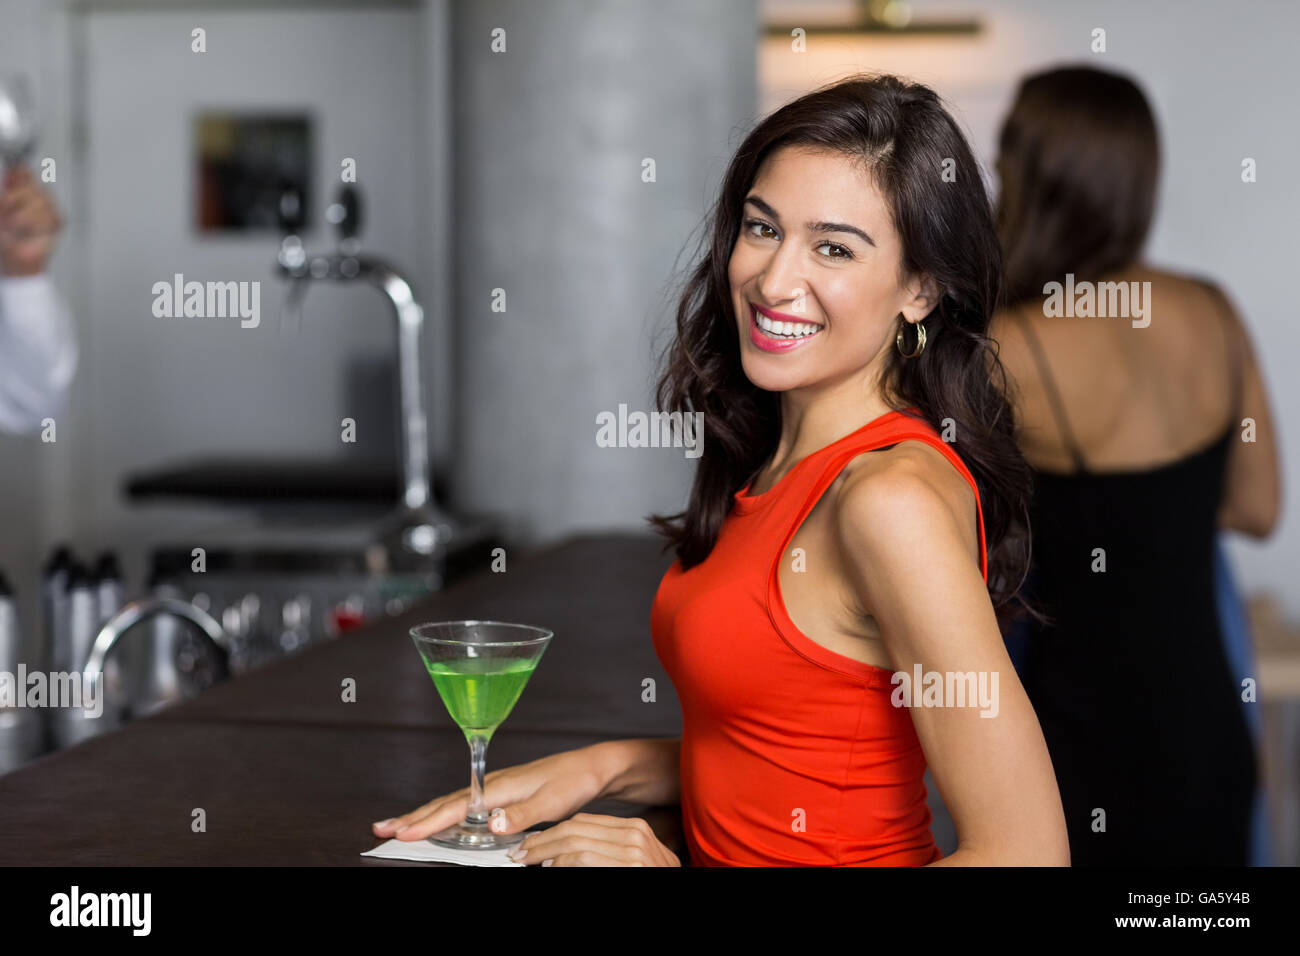 Belle femme debout avec verre à cocktail Banque D'Images